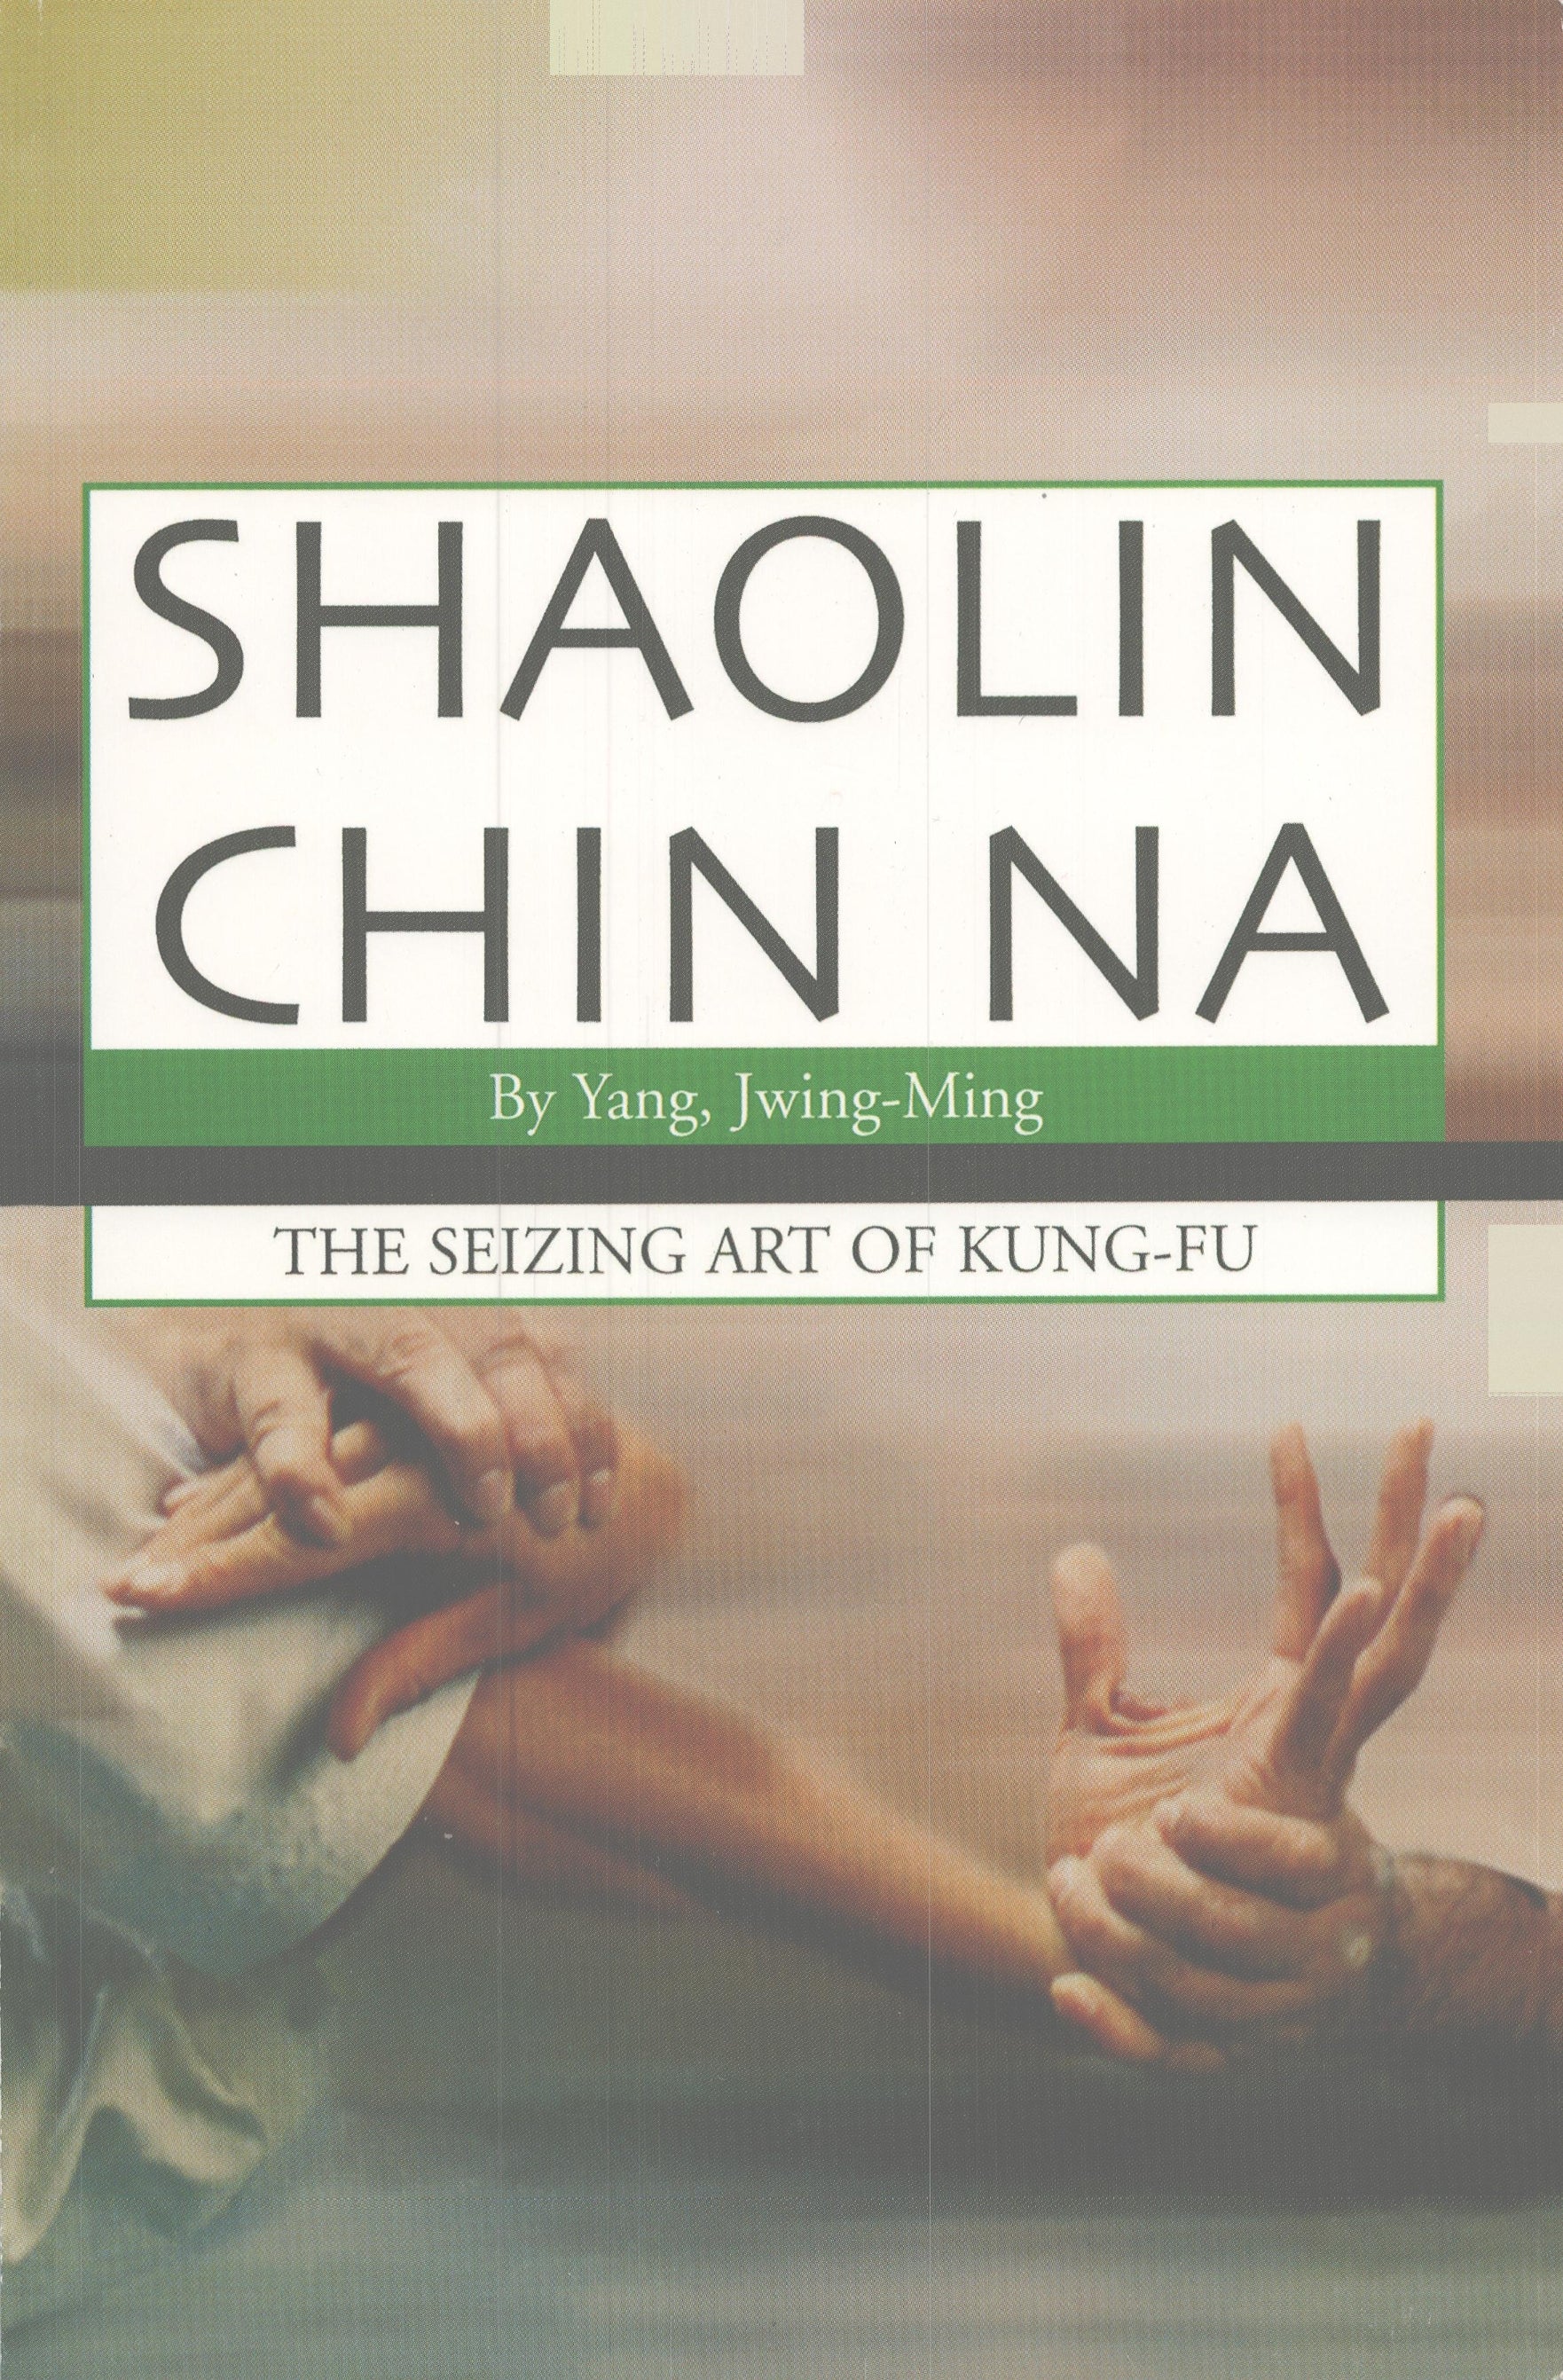 Shaolin Chin Na Book Yang Jwing-Ming, kung fu martial arts